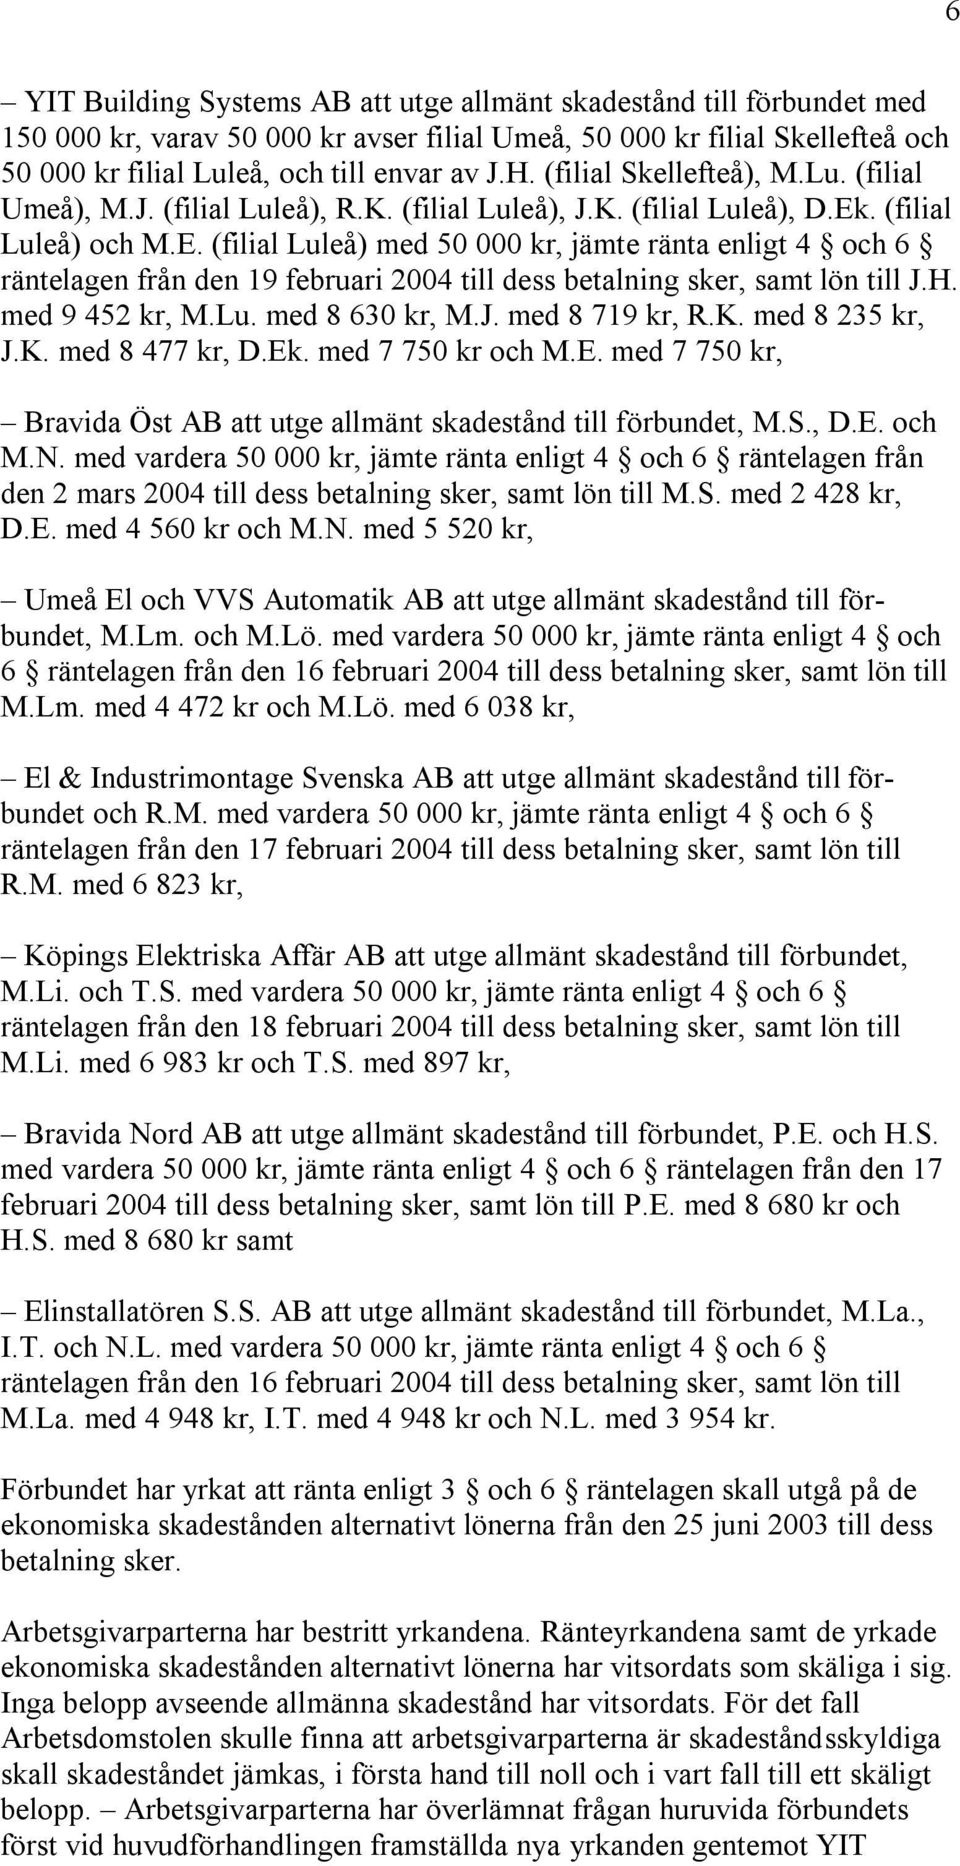 . (filial Luleå) och M.E. (filial Luleå) med 50 000 kr, jämte ränta enligt 4 och 6 räntelagen från den 19 februari 2004 till dess betalning sker, samt lön till J.H. med 9 452 kr, M.Lu. med 8 630 kr, M.